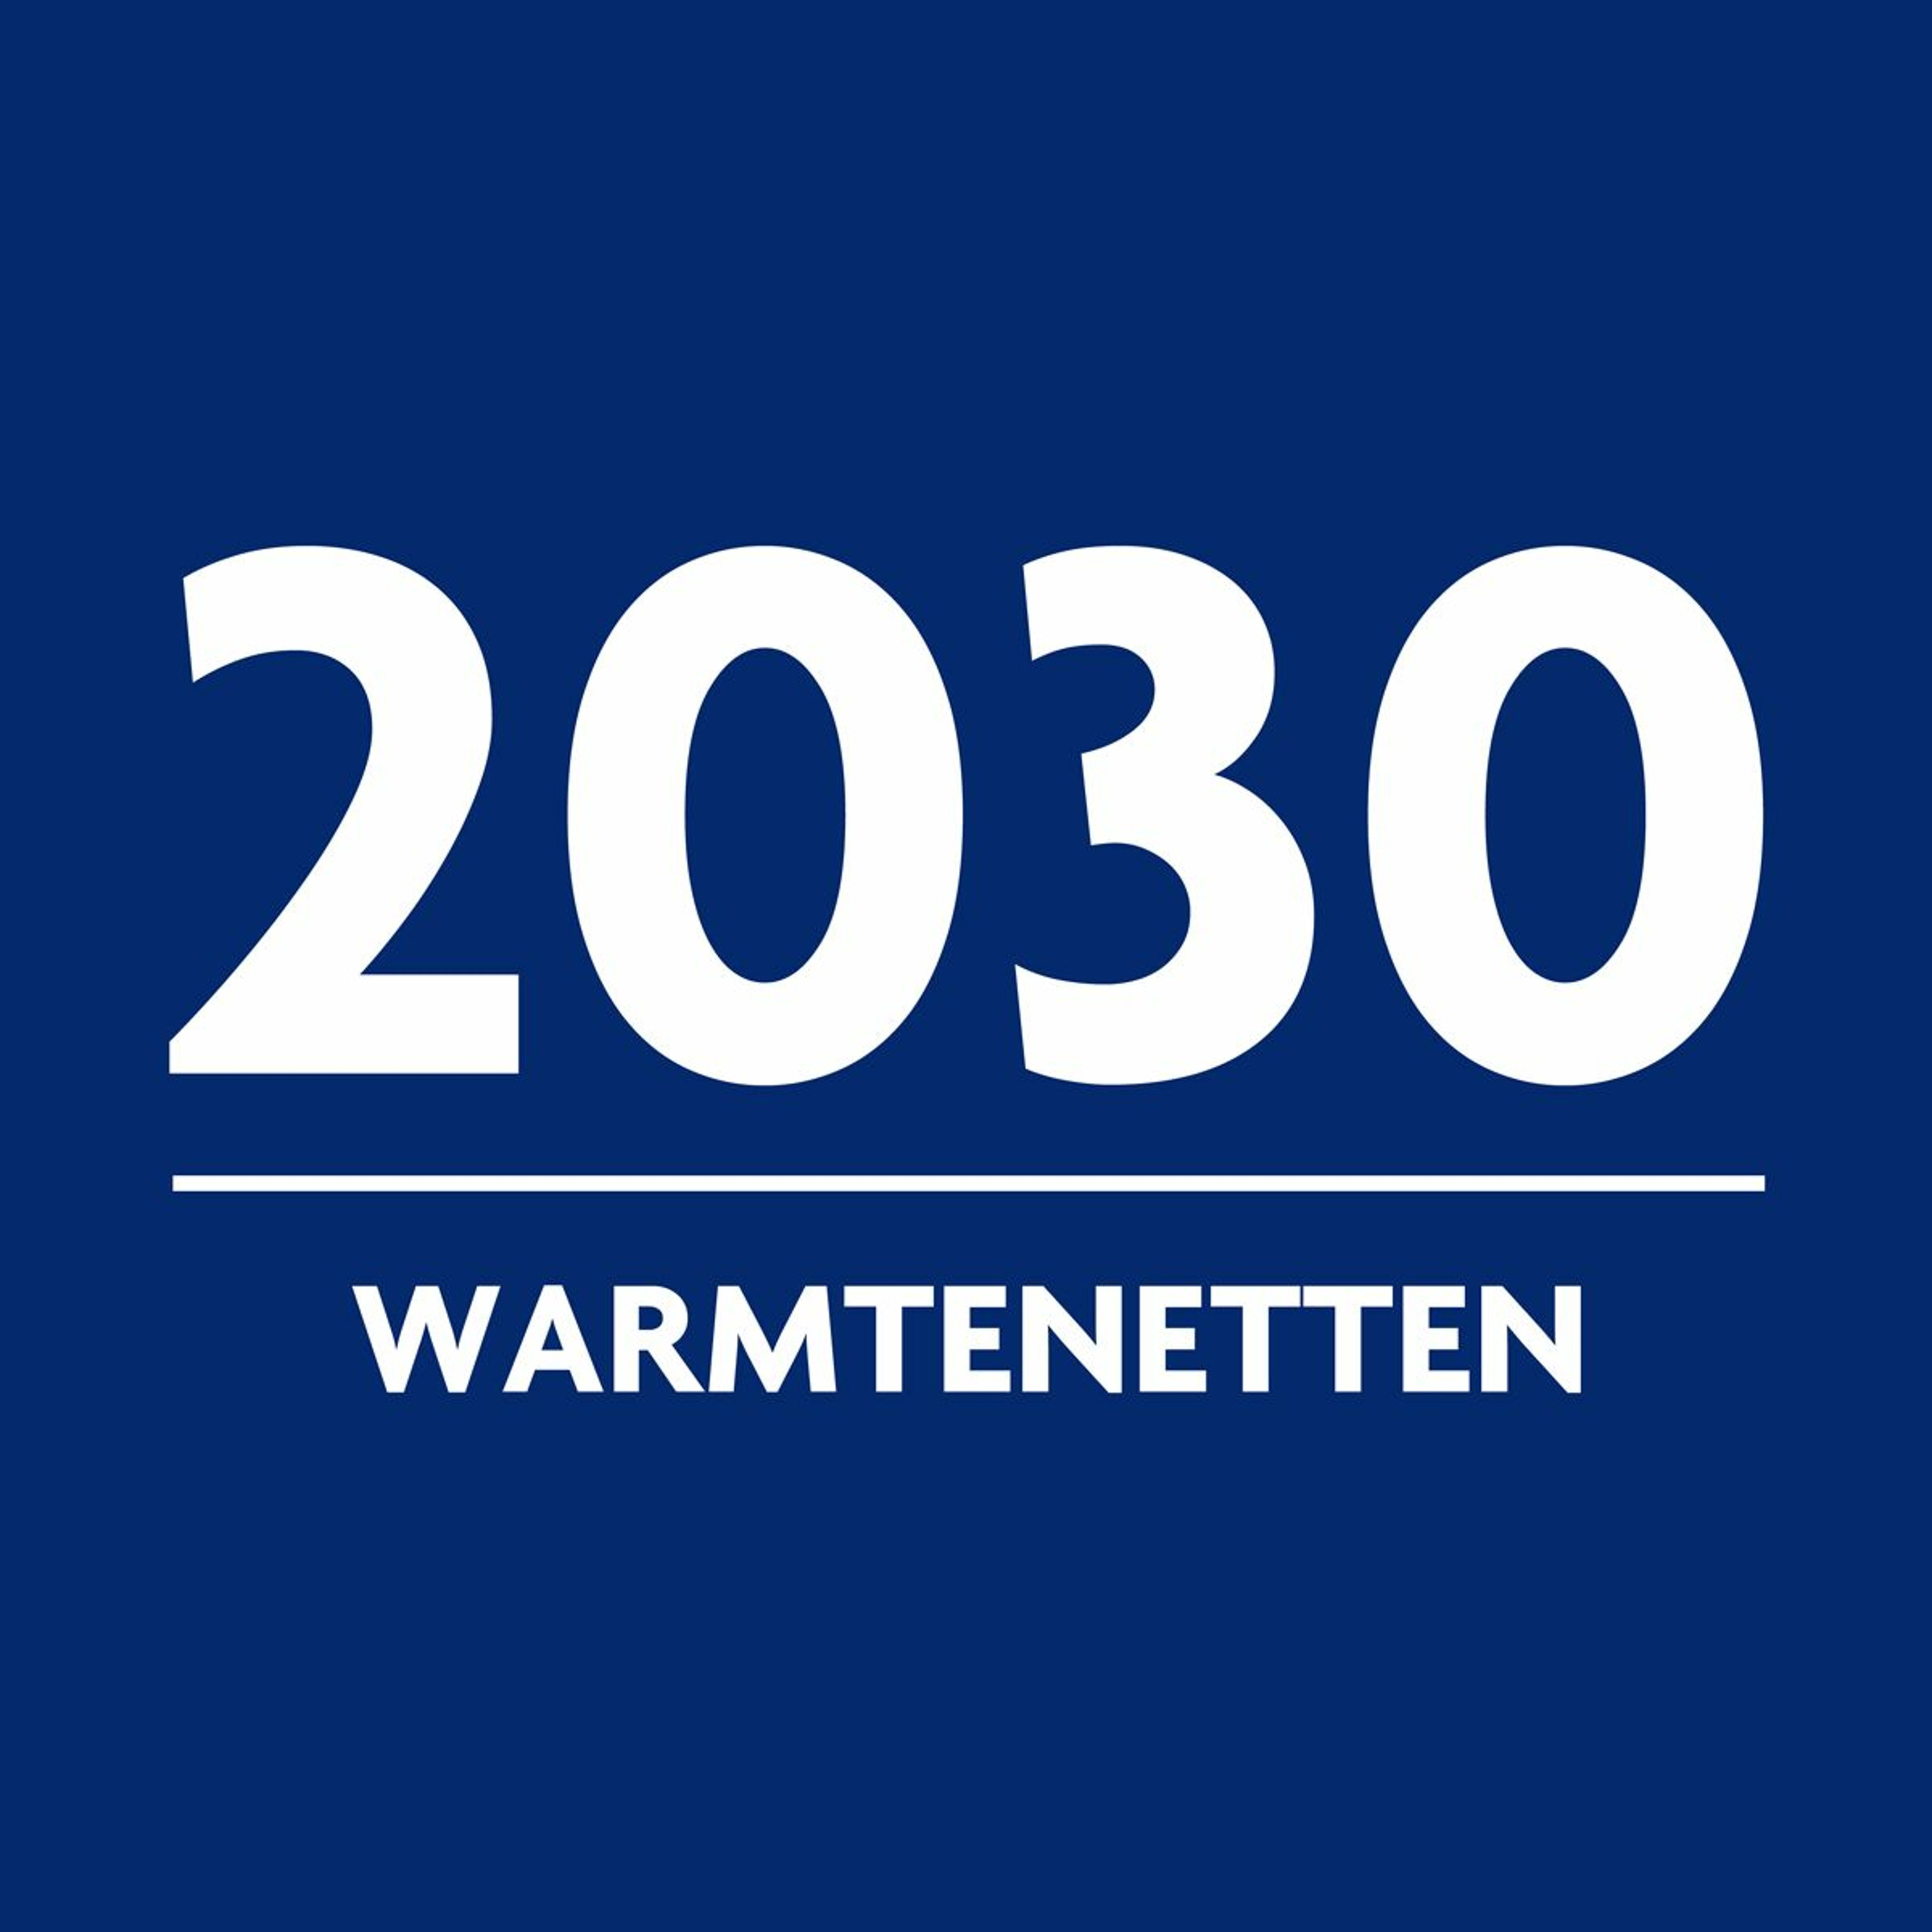 02 - Warmtenetten met Kees van Daalen en Jan van der Meer